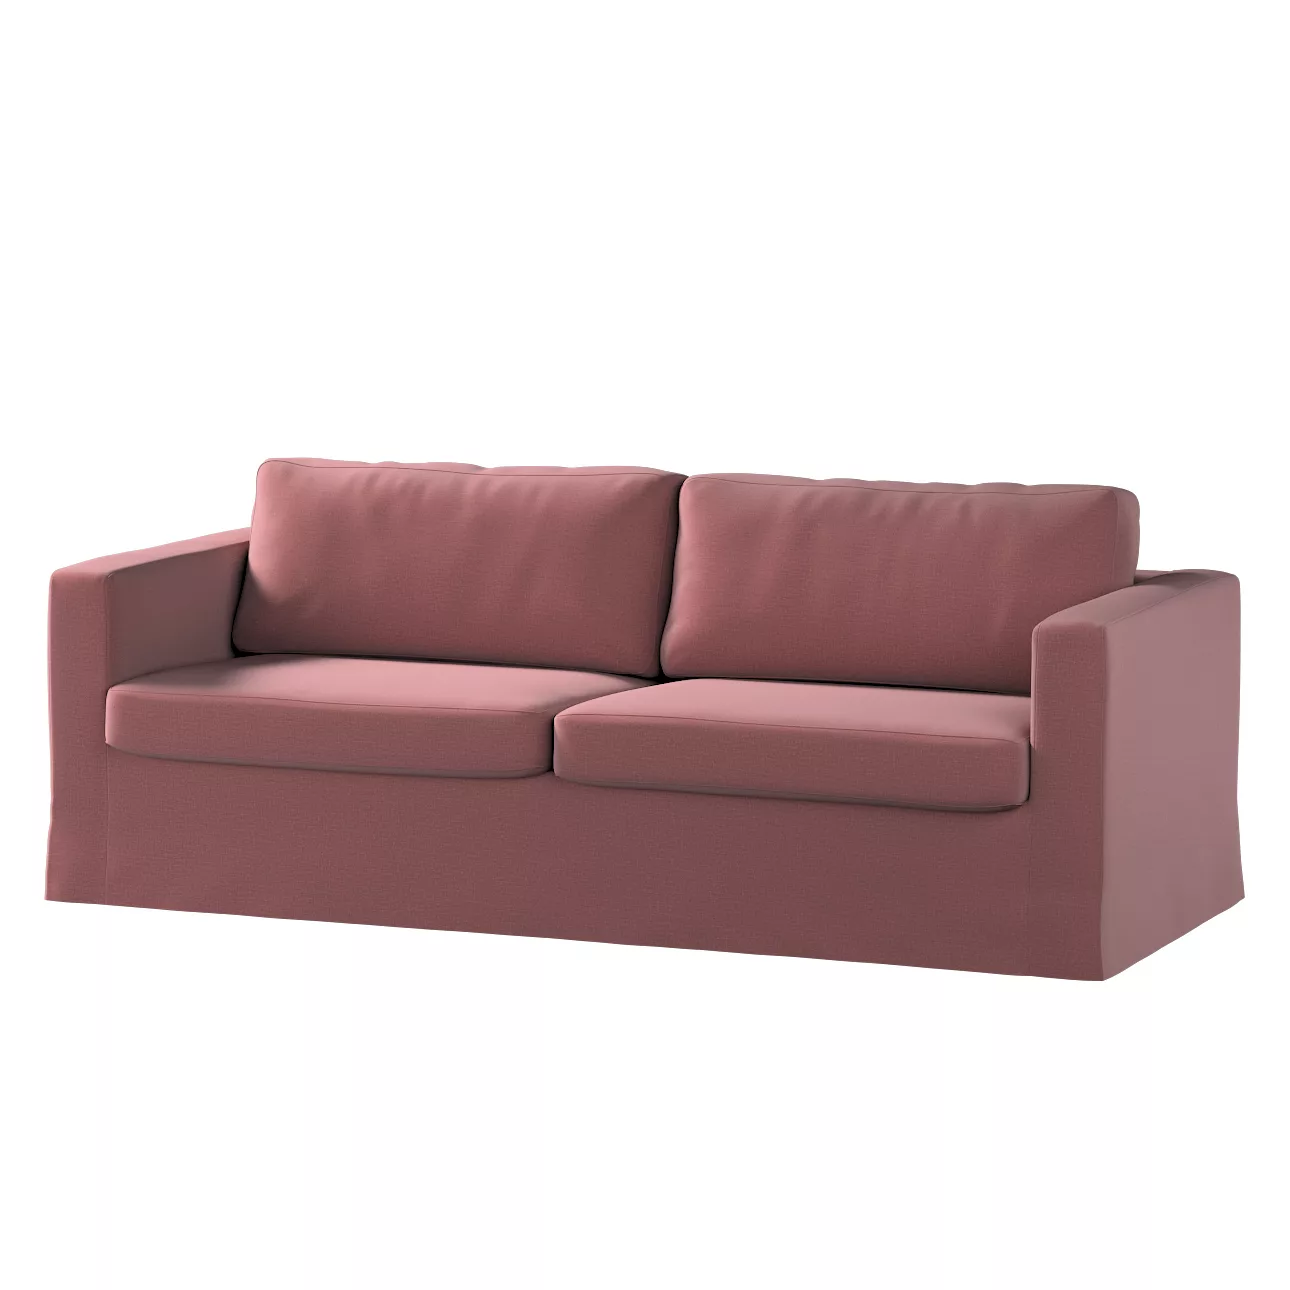 Bezug für Karlstad 3-Sitzer Sofa nicht ausklappbar, lang, violett, Bezug fü günstig online kaufen